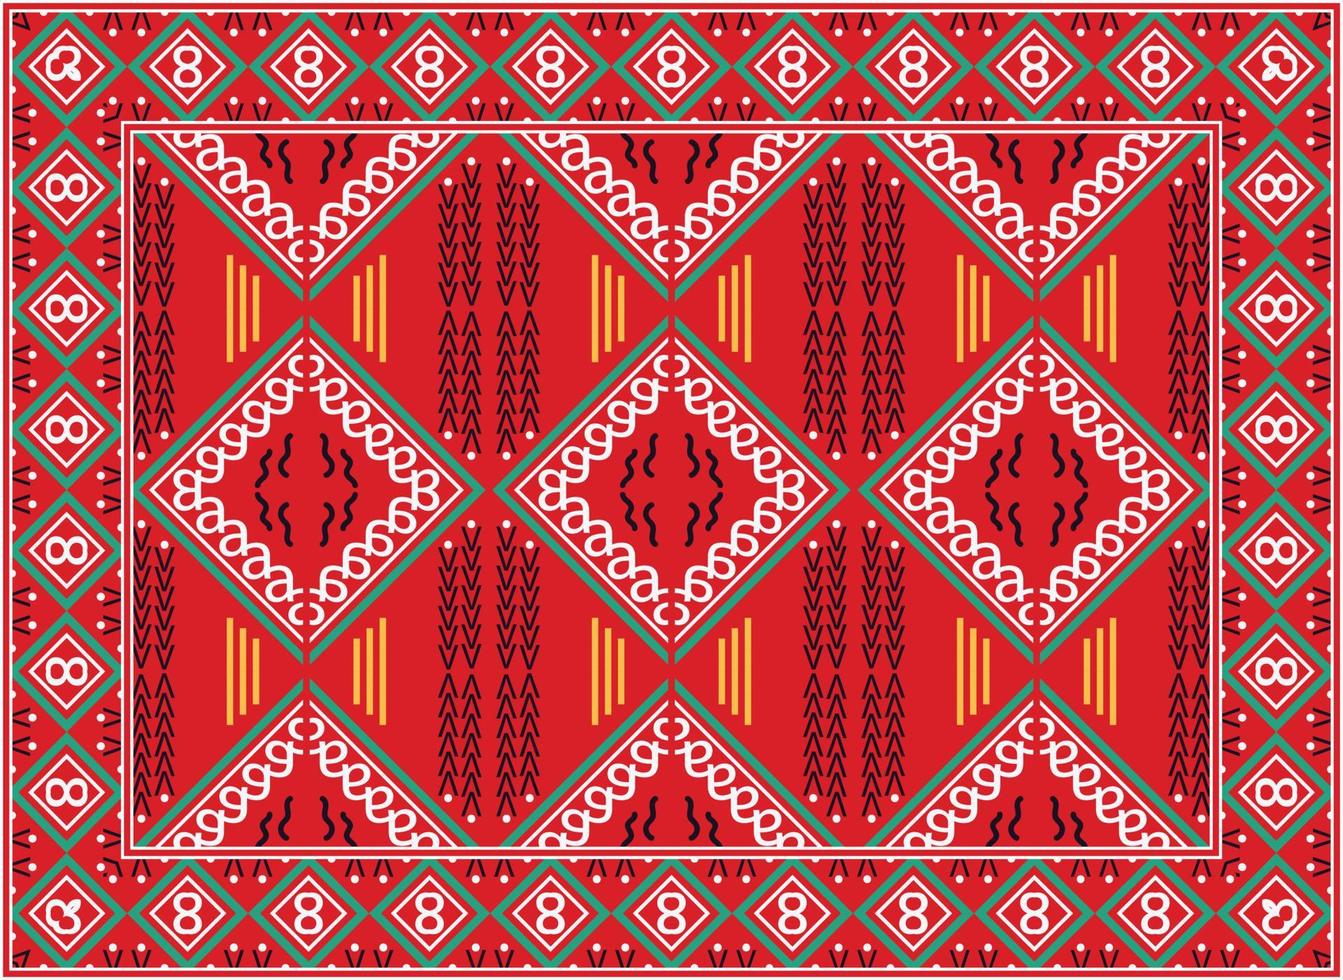 persisk matta modern levande rum, boho persisk matta levande rum afrikansk etnisk aztec stil design för skriva ut tyg mattor, handdukar, näsdukar, halsdukar matta, vektor